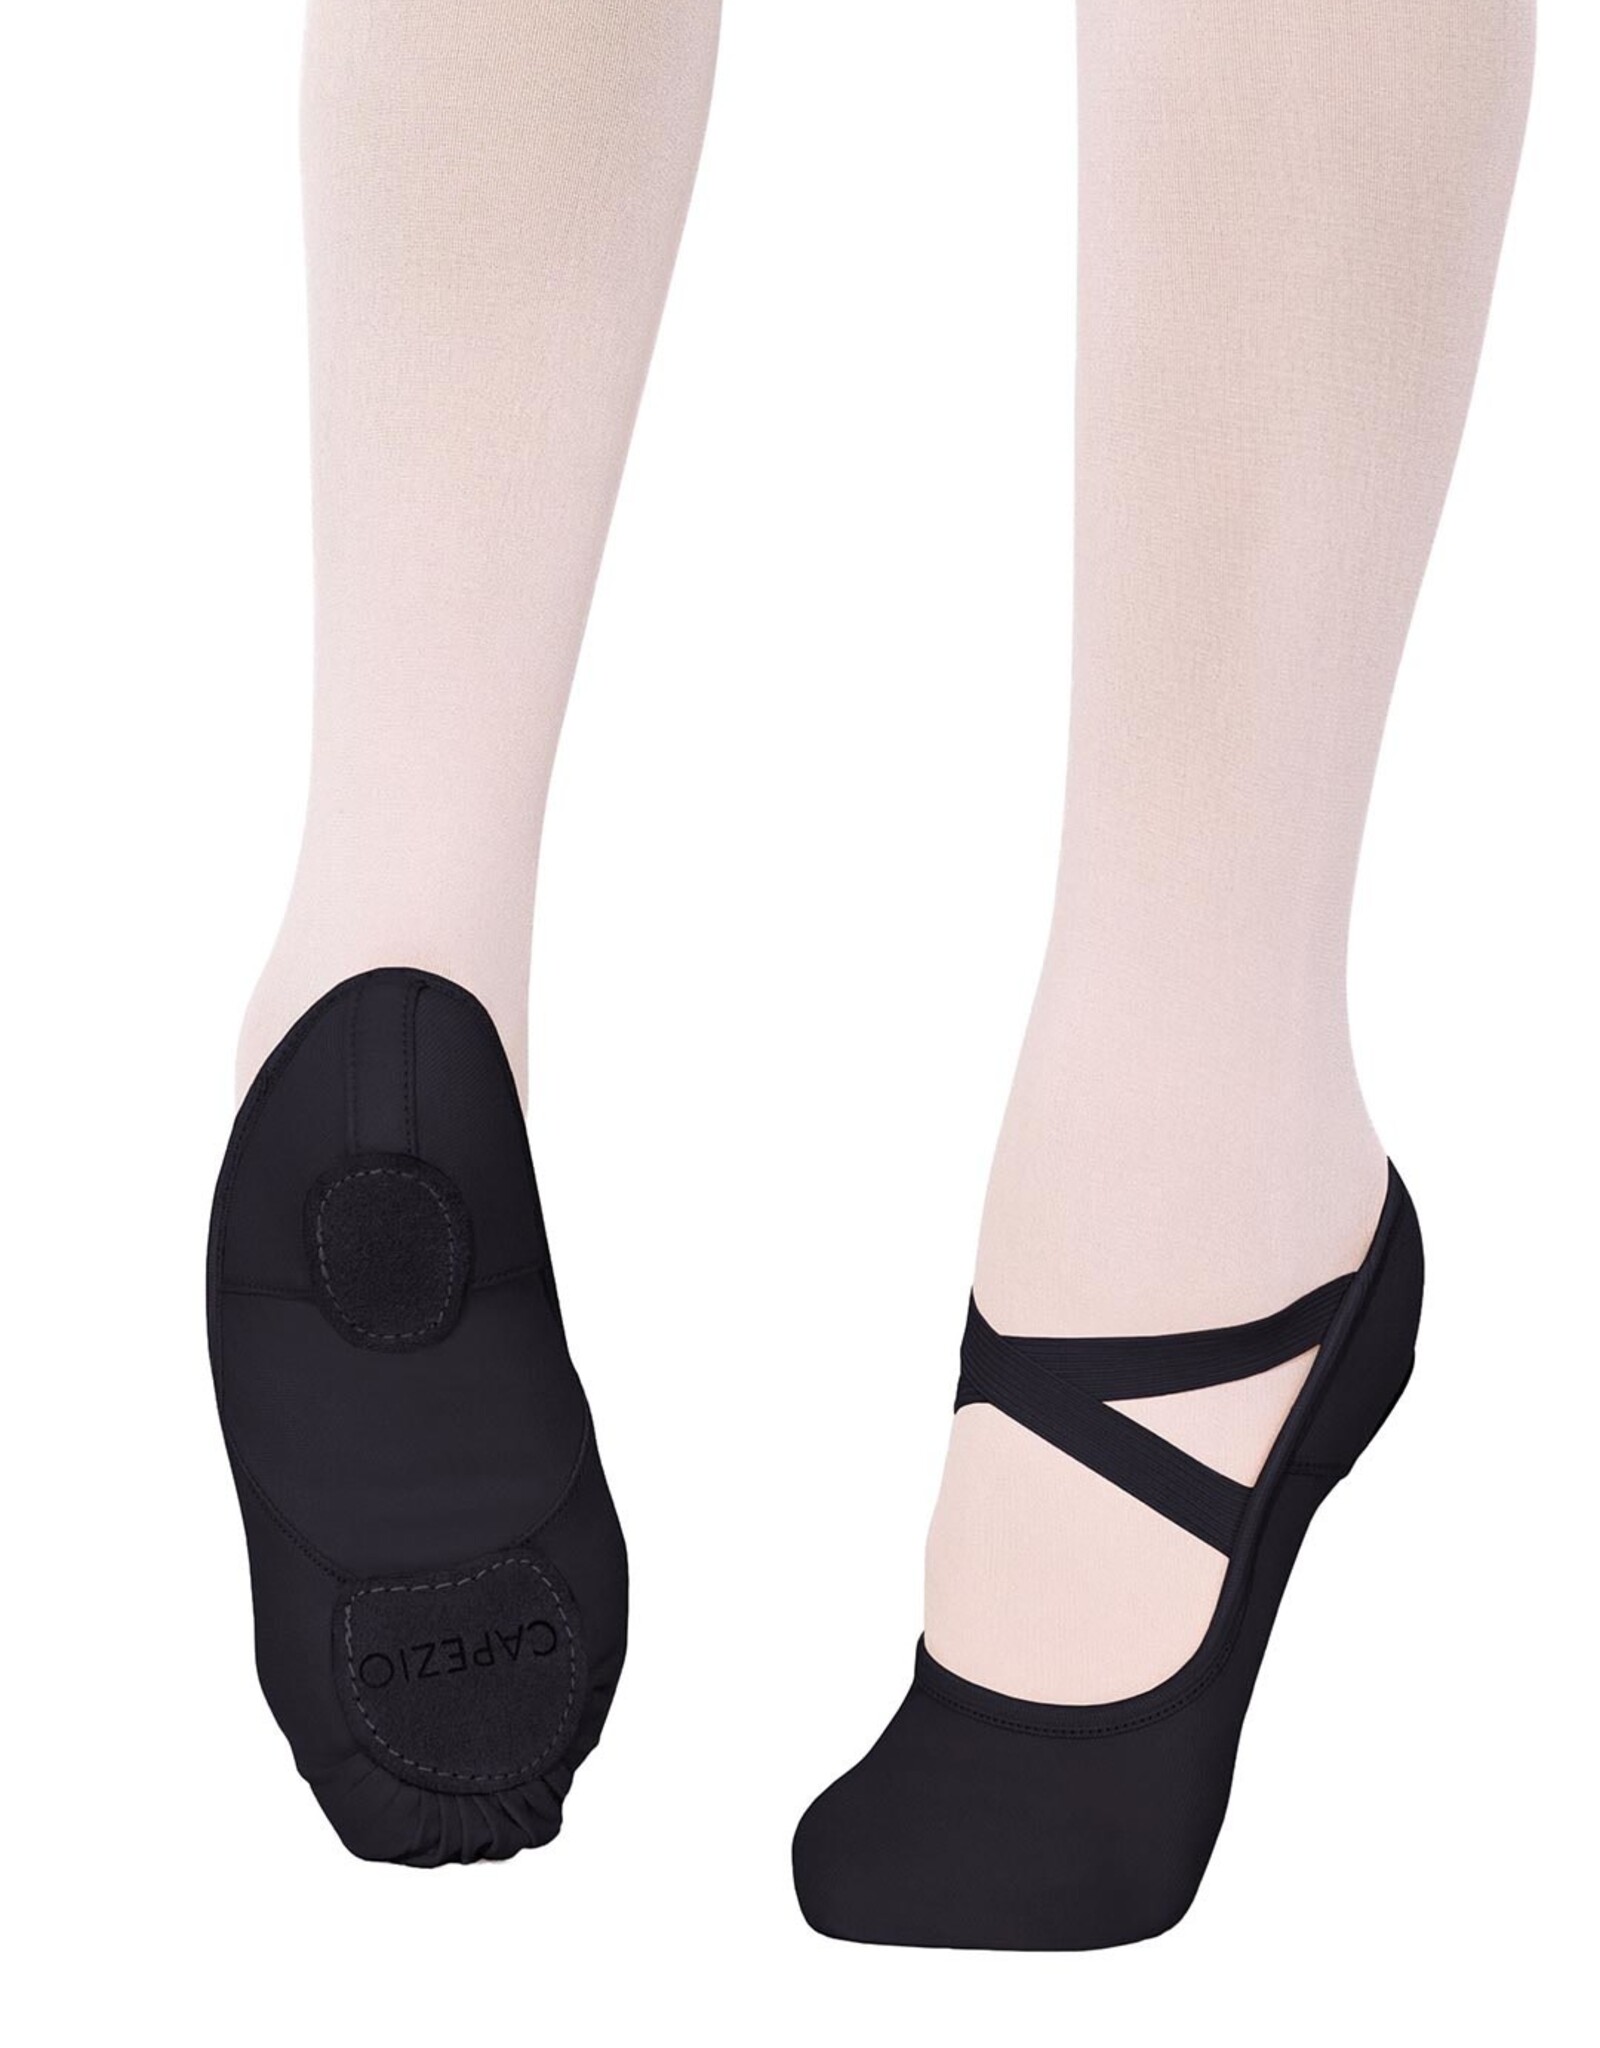 Capezio Hanami Ballet Shoe - Adult